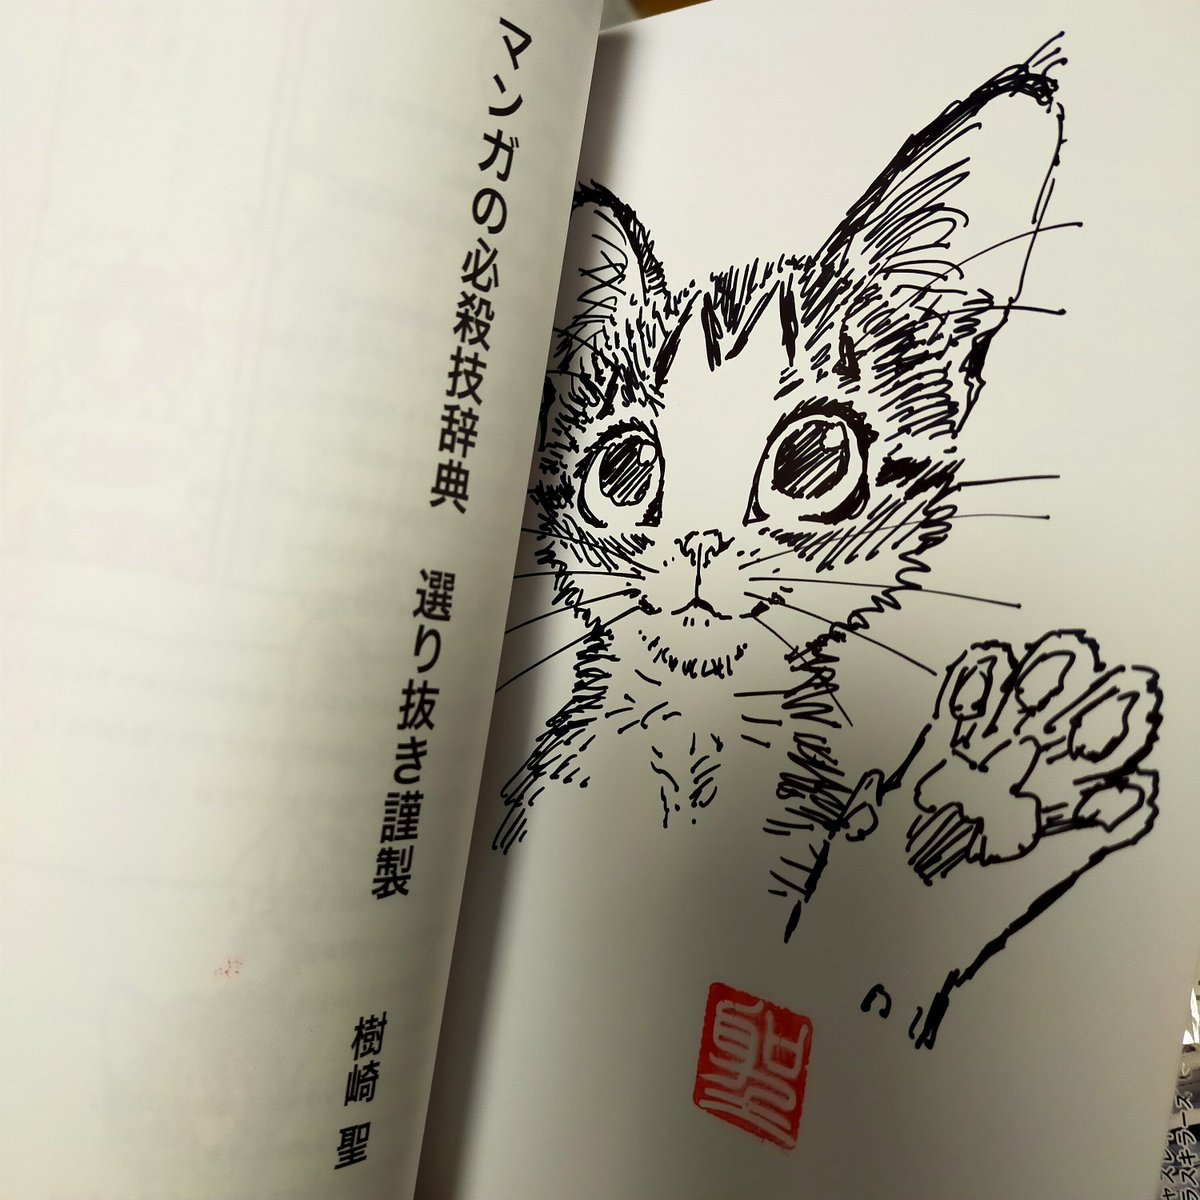 サイン本はこんなですー
同じ絵を描くの苦手なんです。
絵が死んじゃうので。
#マンガの必殺技辞典選り抜き謹製 #CatCuts https://t.co/tsAVYbyR2V 